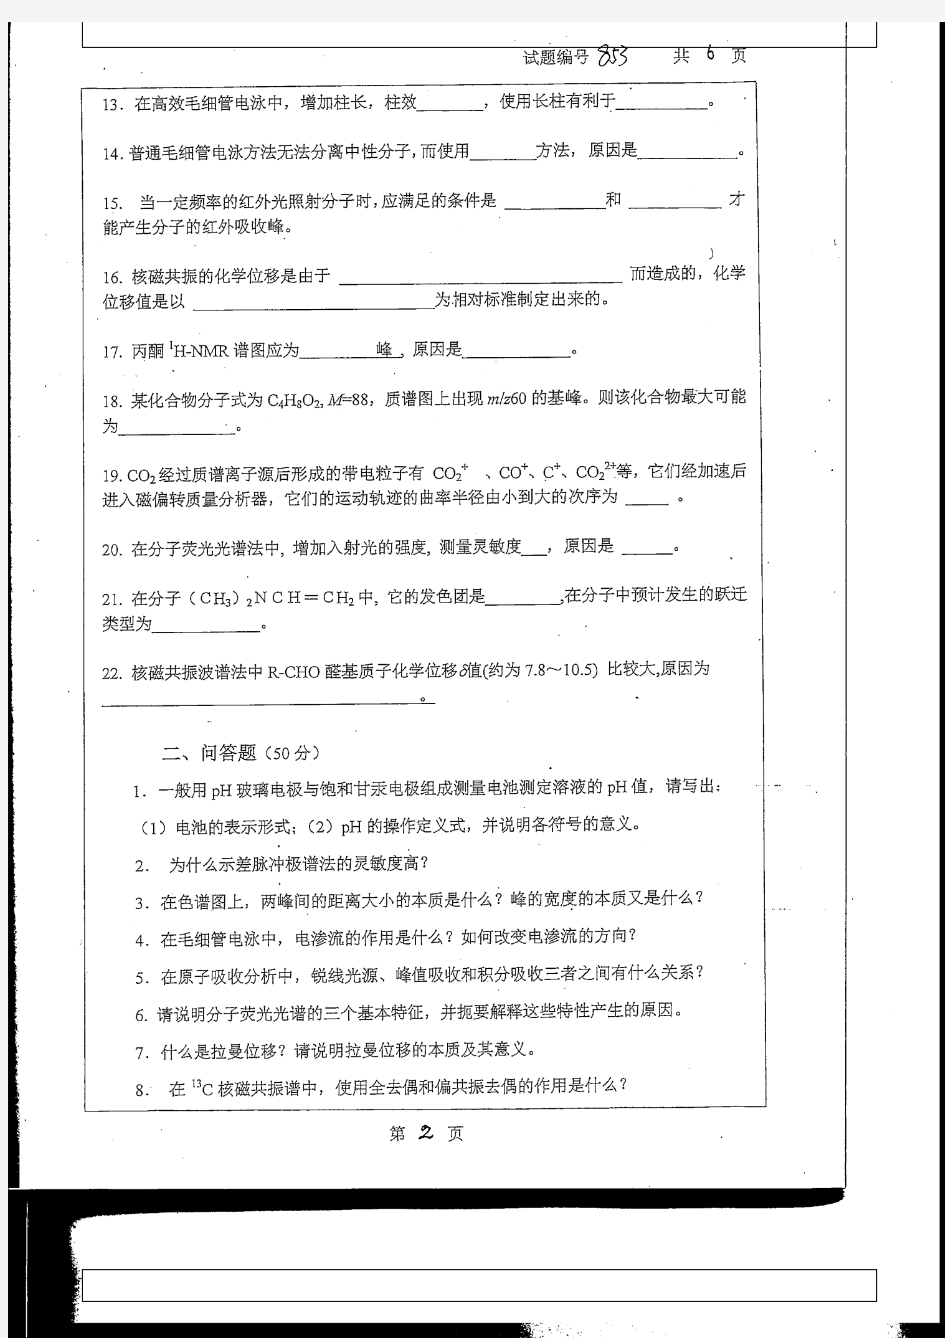 南京大学仪器分析2013考研真题